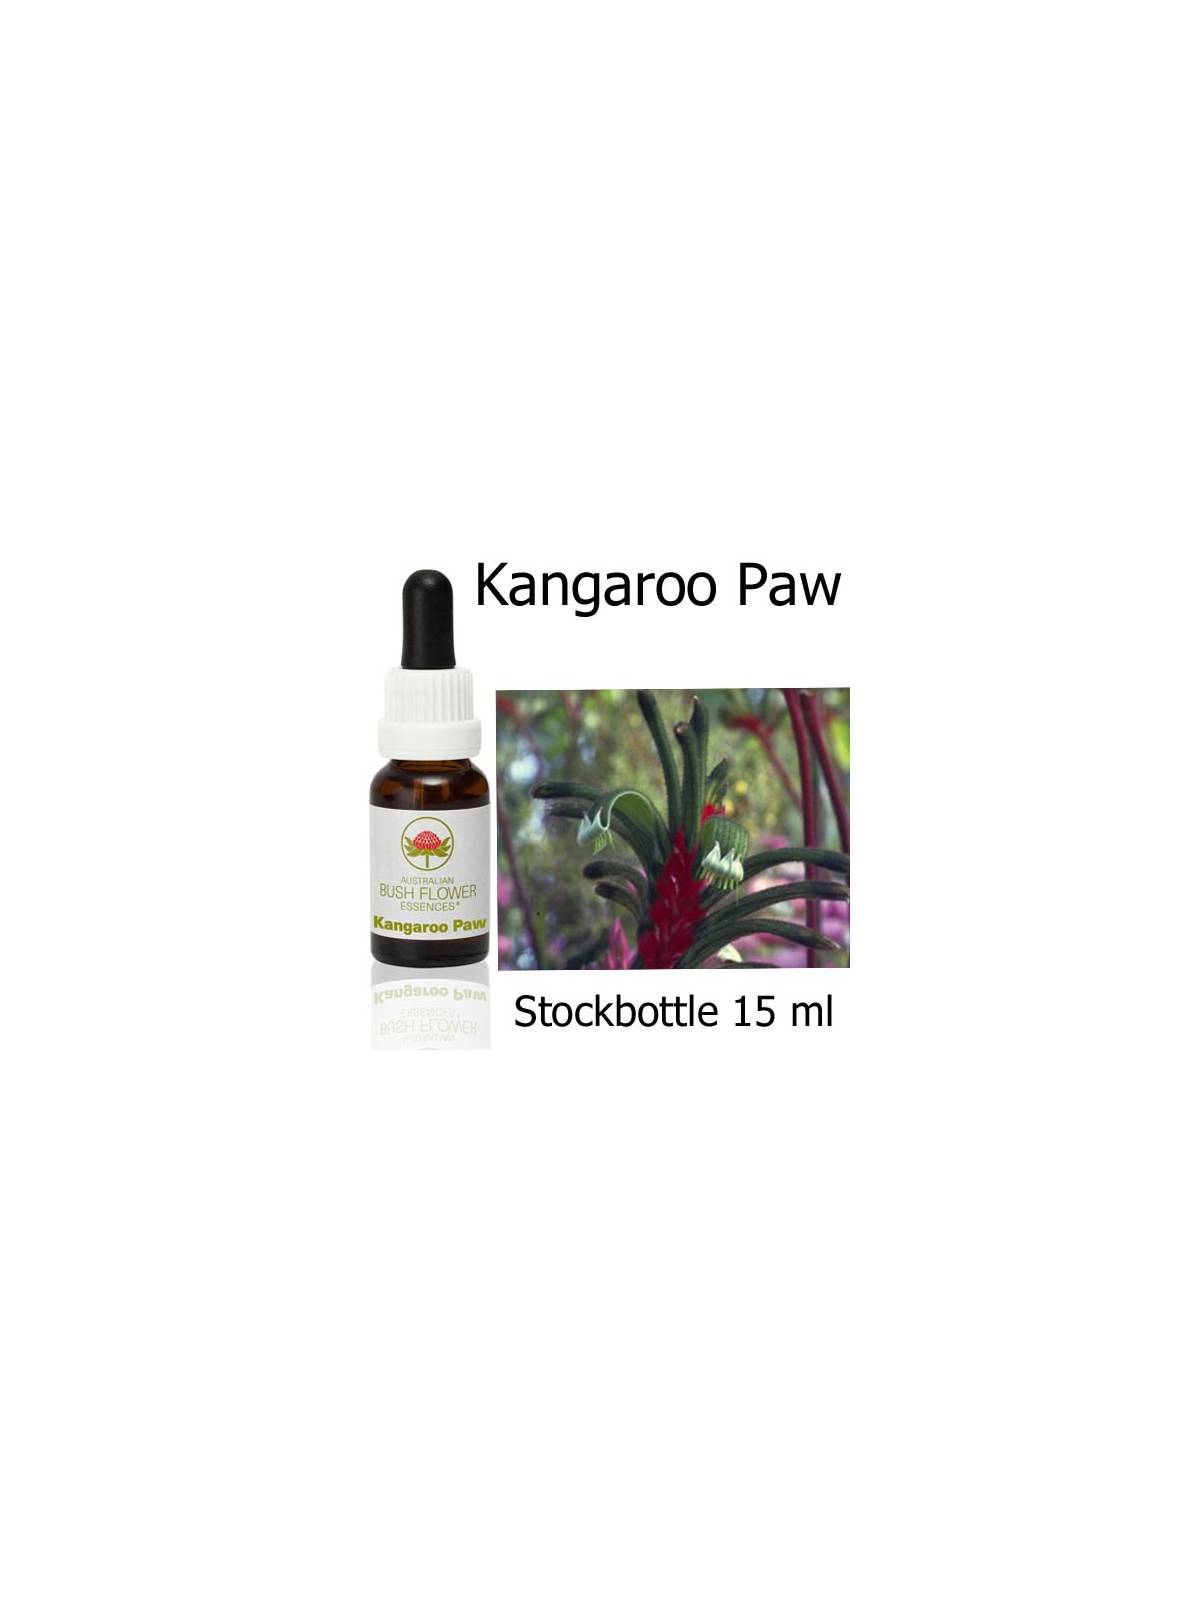 Kangaroo Paw Australian Bush Flower Essences stockbottles